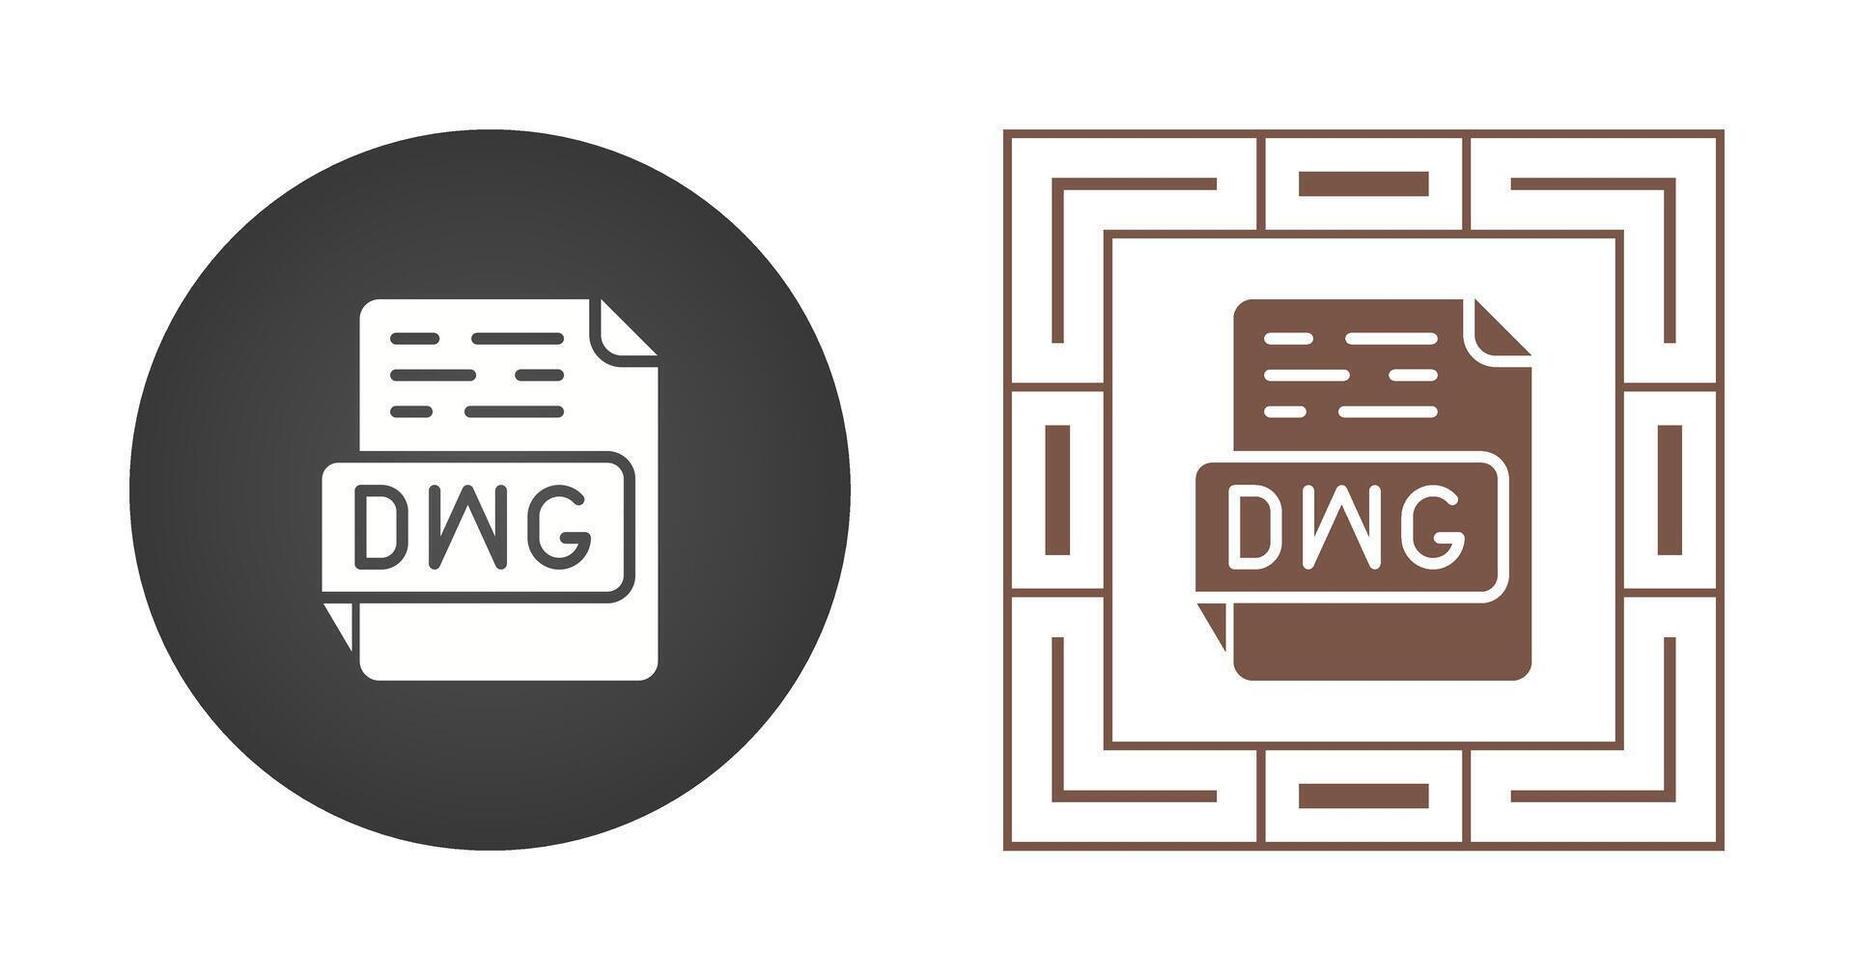 DWG Vector Icon